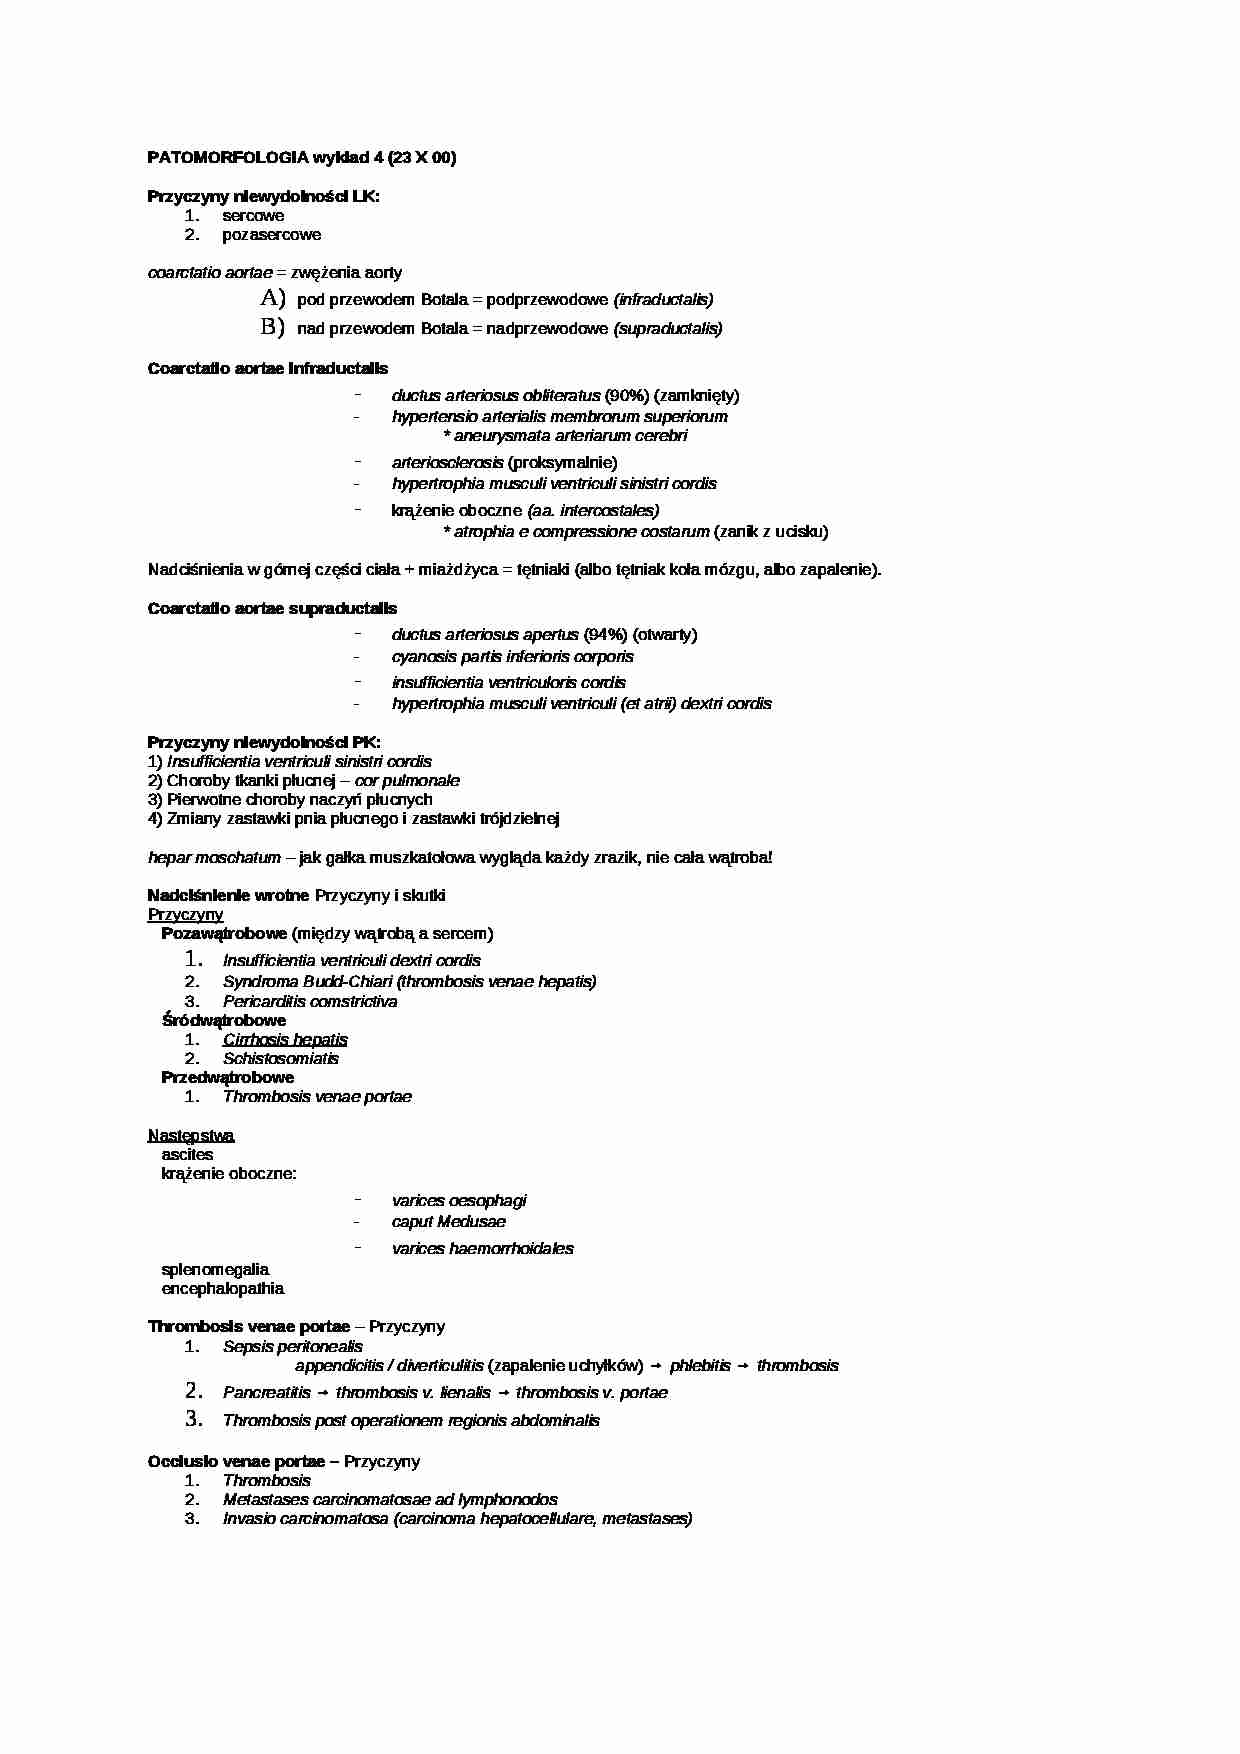 Patomorfologia - wykład 3 - strona 1